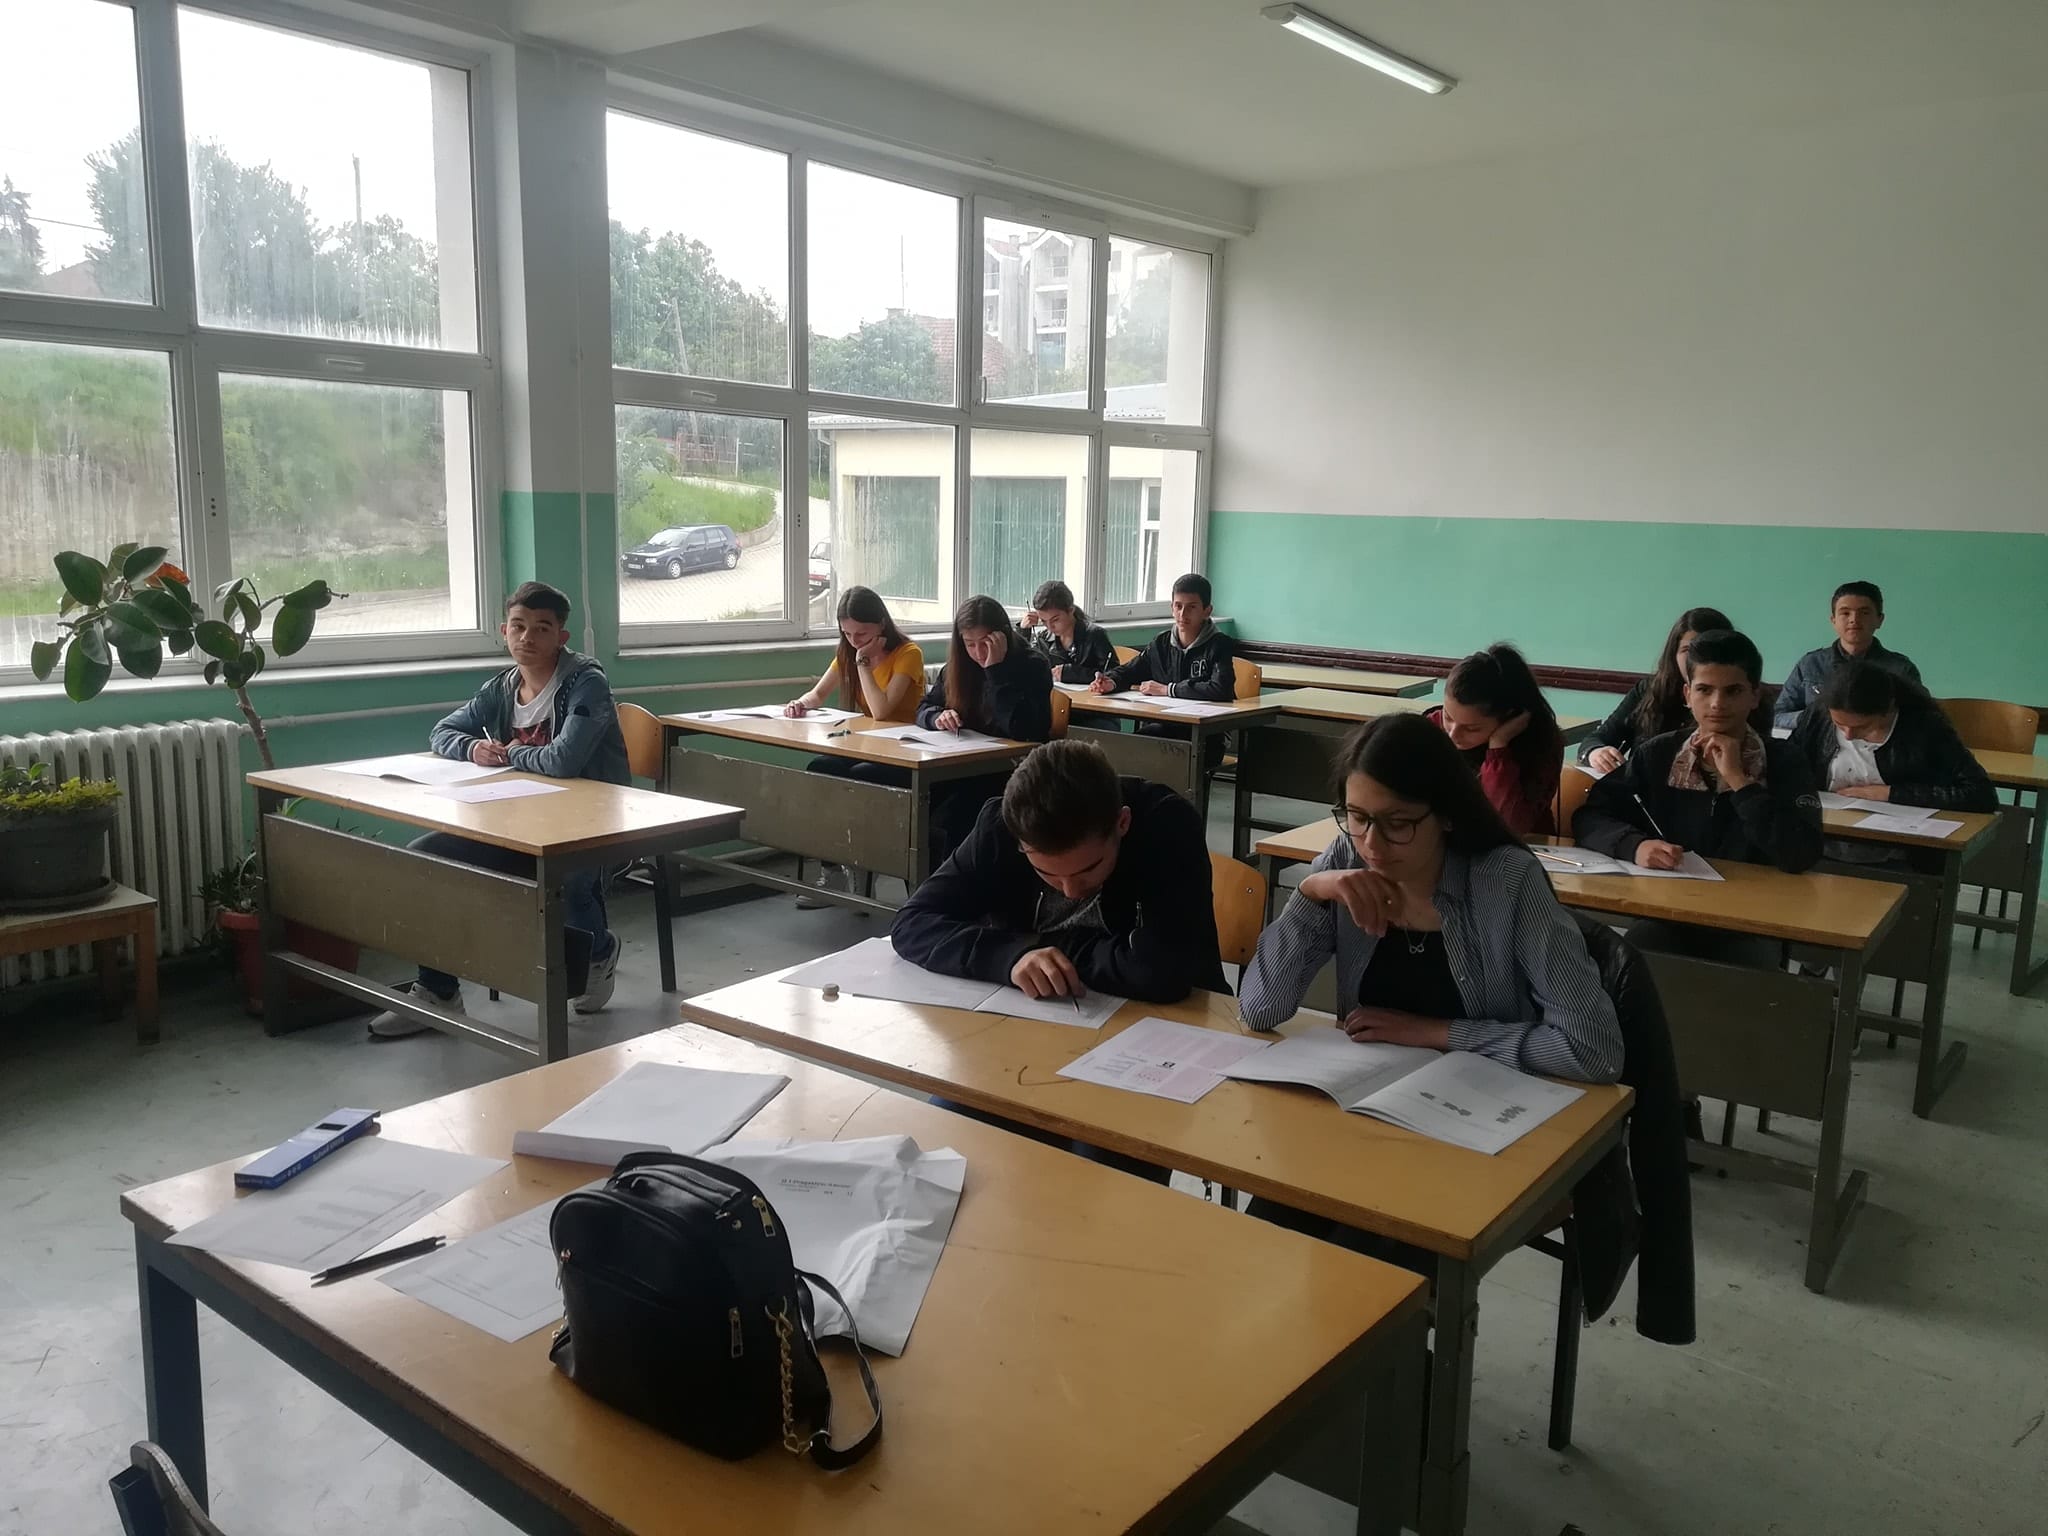 Në lokalet e shkollës së mesme “Ruzhdi Berisha” në Dragash po mbahet Testi i Arritshmërisë